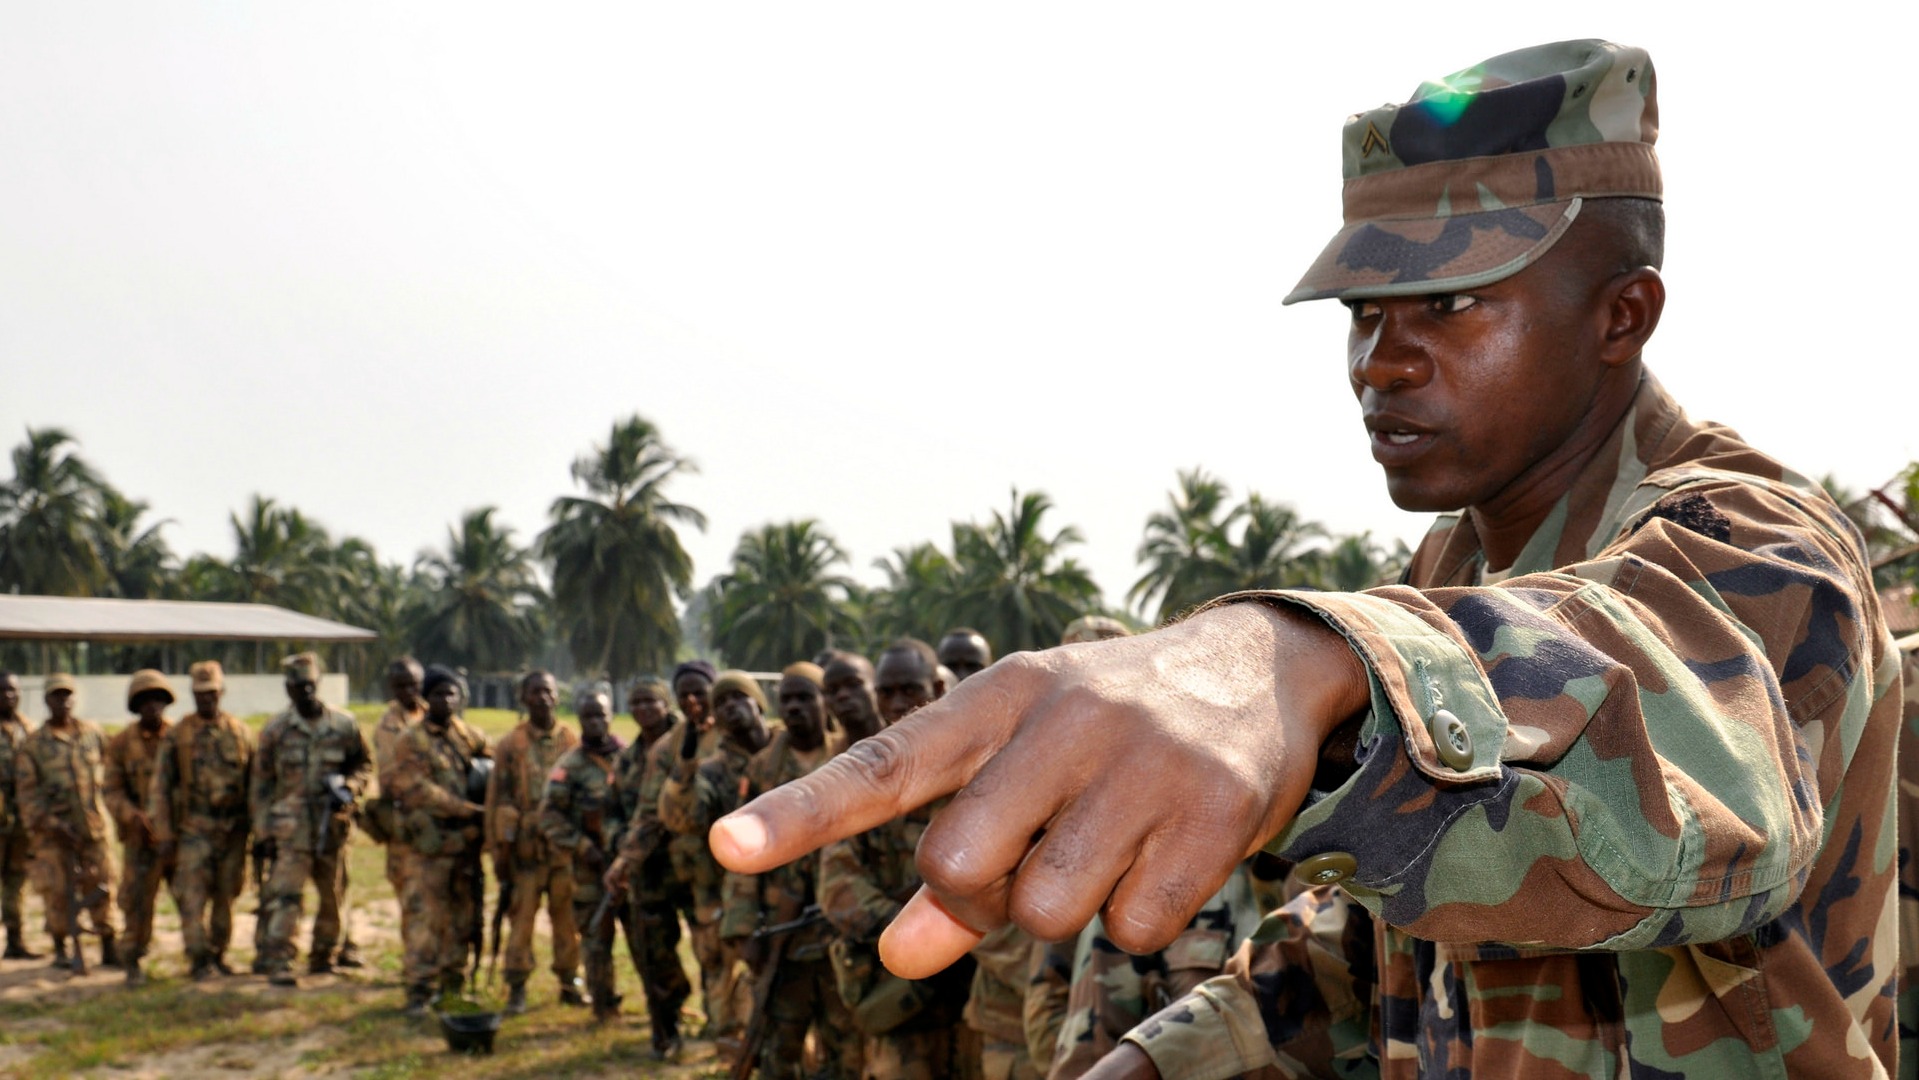 Des mutineries de soldats ont eu lieu en Côte d'Ivoire (Photo d'illustration:Michigan National Guard/Flickr/CC BY-NC 2.0)